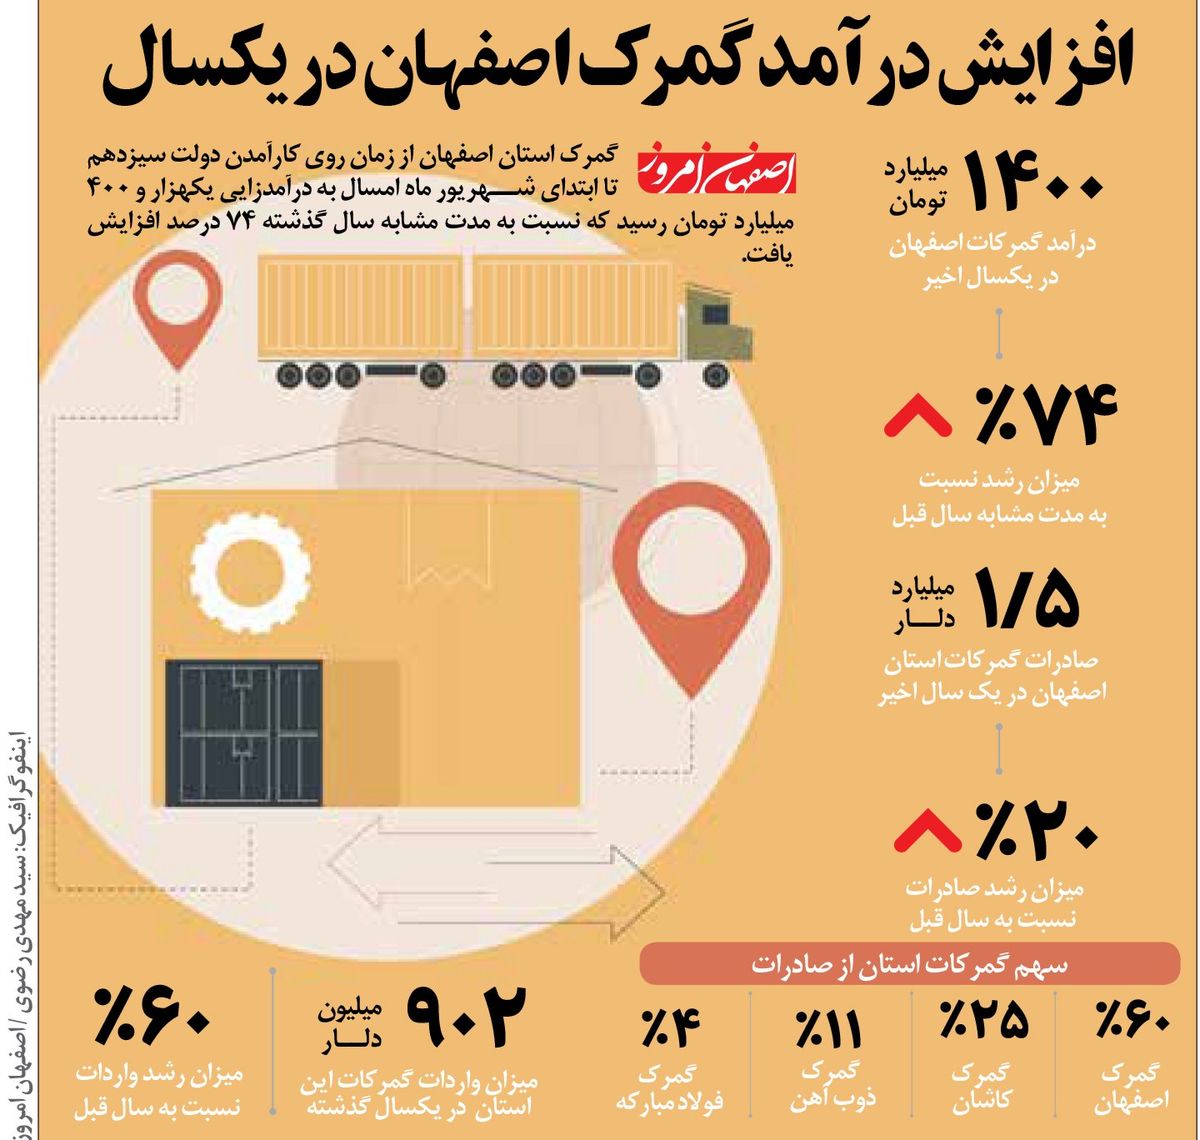 افزایش درآمد گمرک اصفهان در یکسال